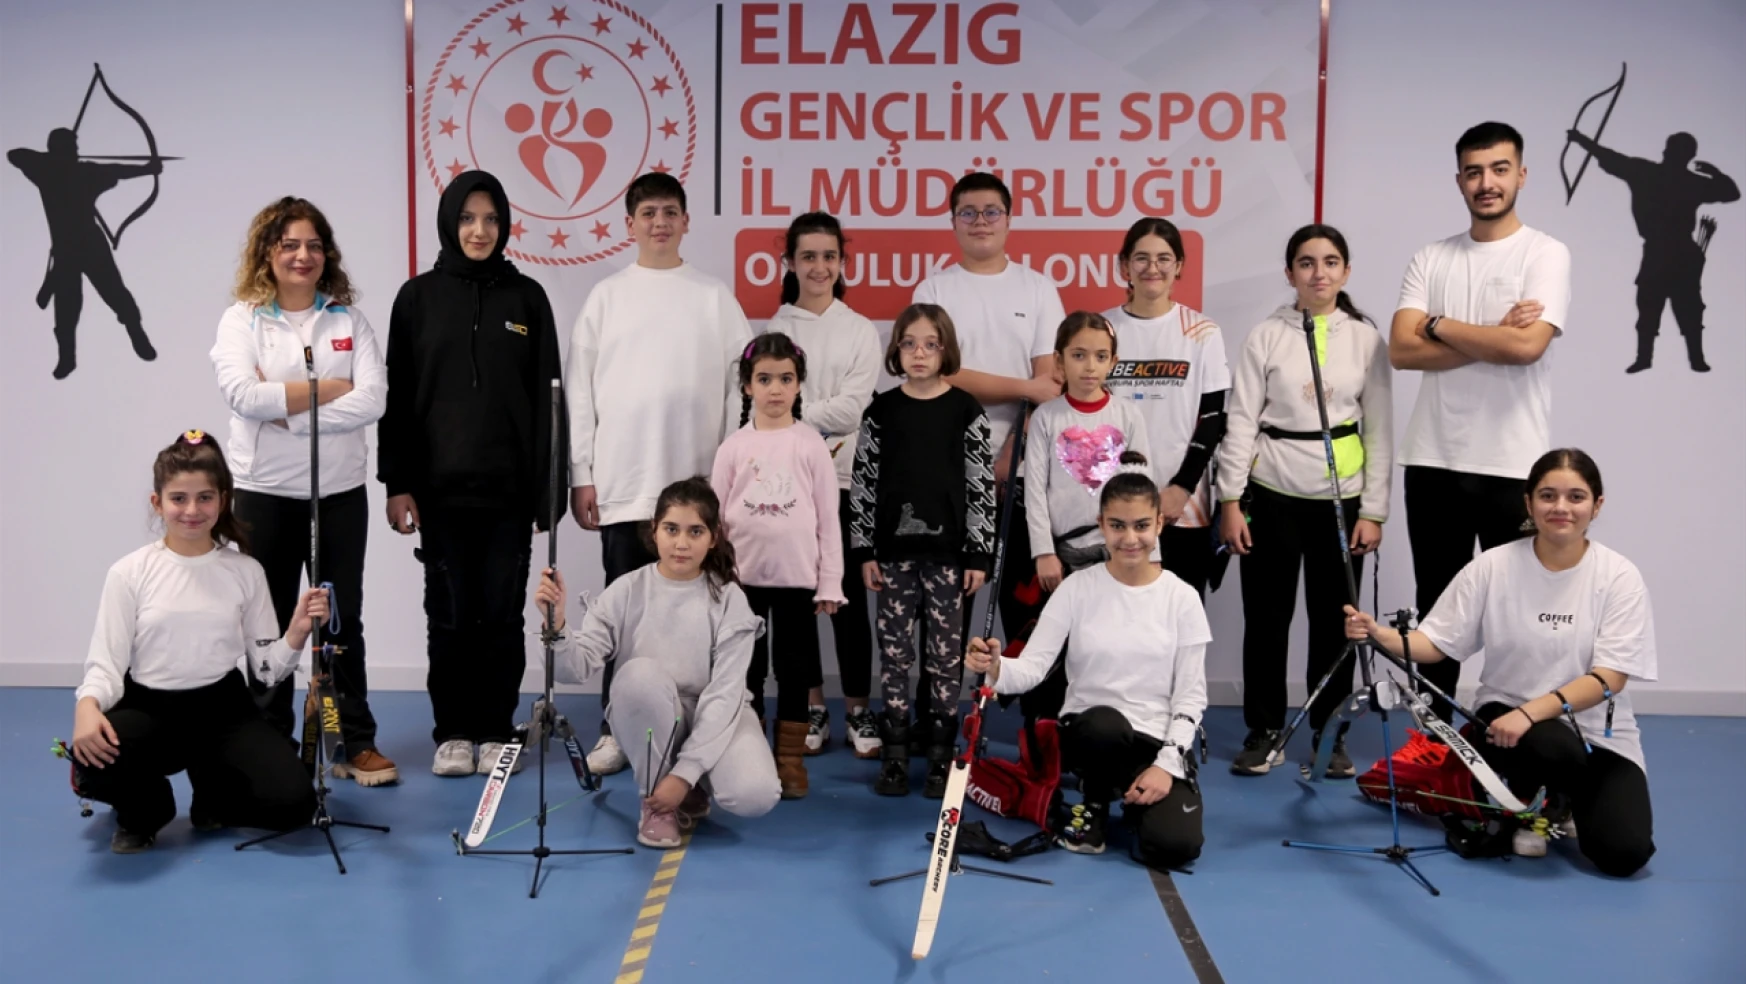 Elazığ'da sporcular Mete Gazoz gibi şampiyon olmanın hedefiyle yay çekiyor